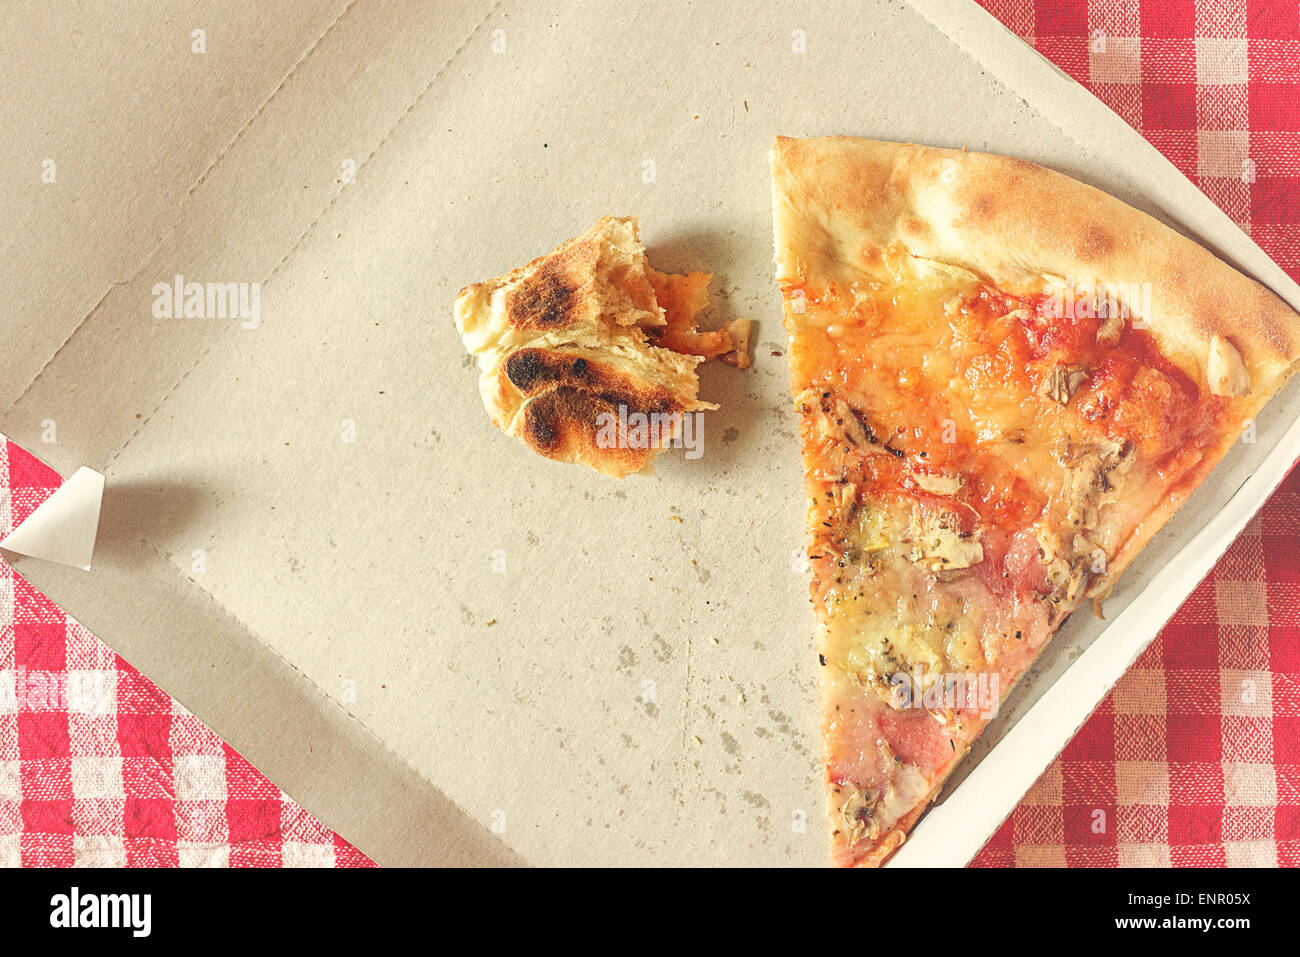 Pizzastück und Fastfood-Reste im Karton am Küchentisch, Retro-Stil getönten Bild, selektiven Fokus Stockfoto